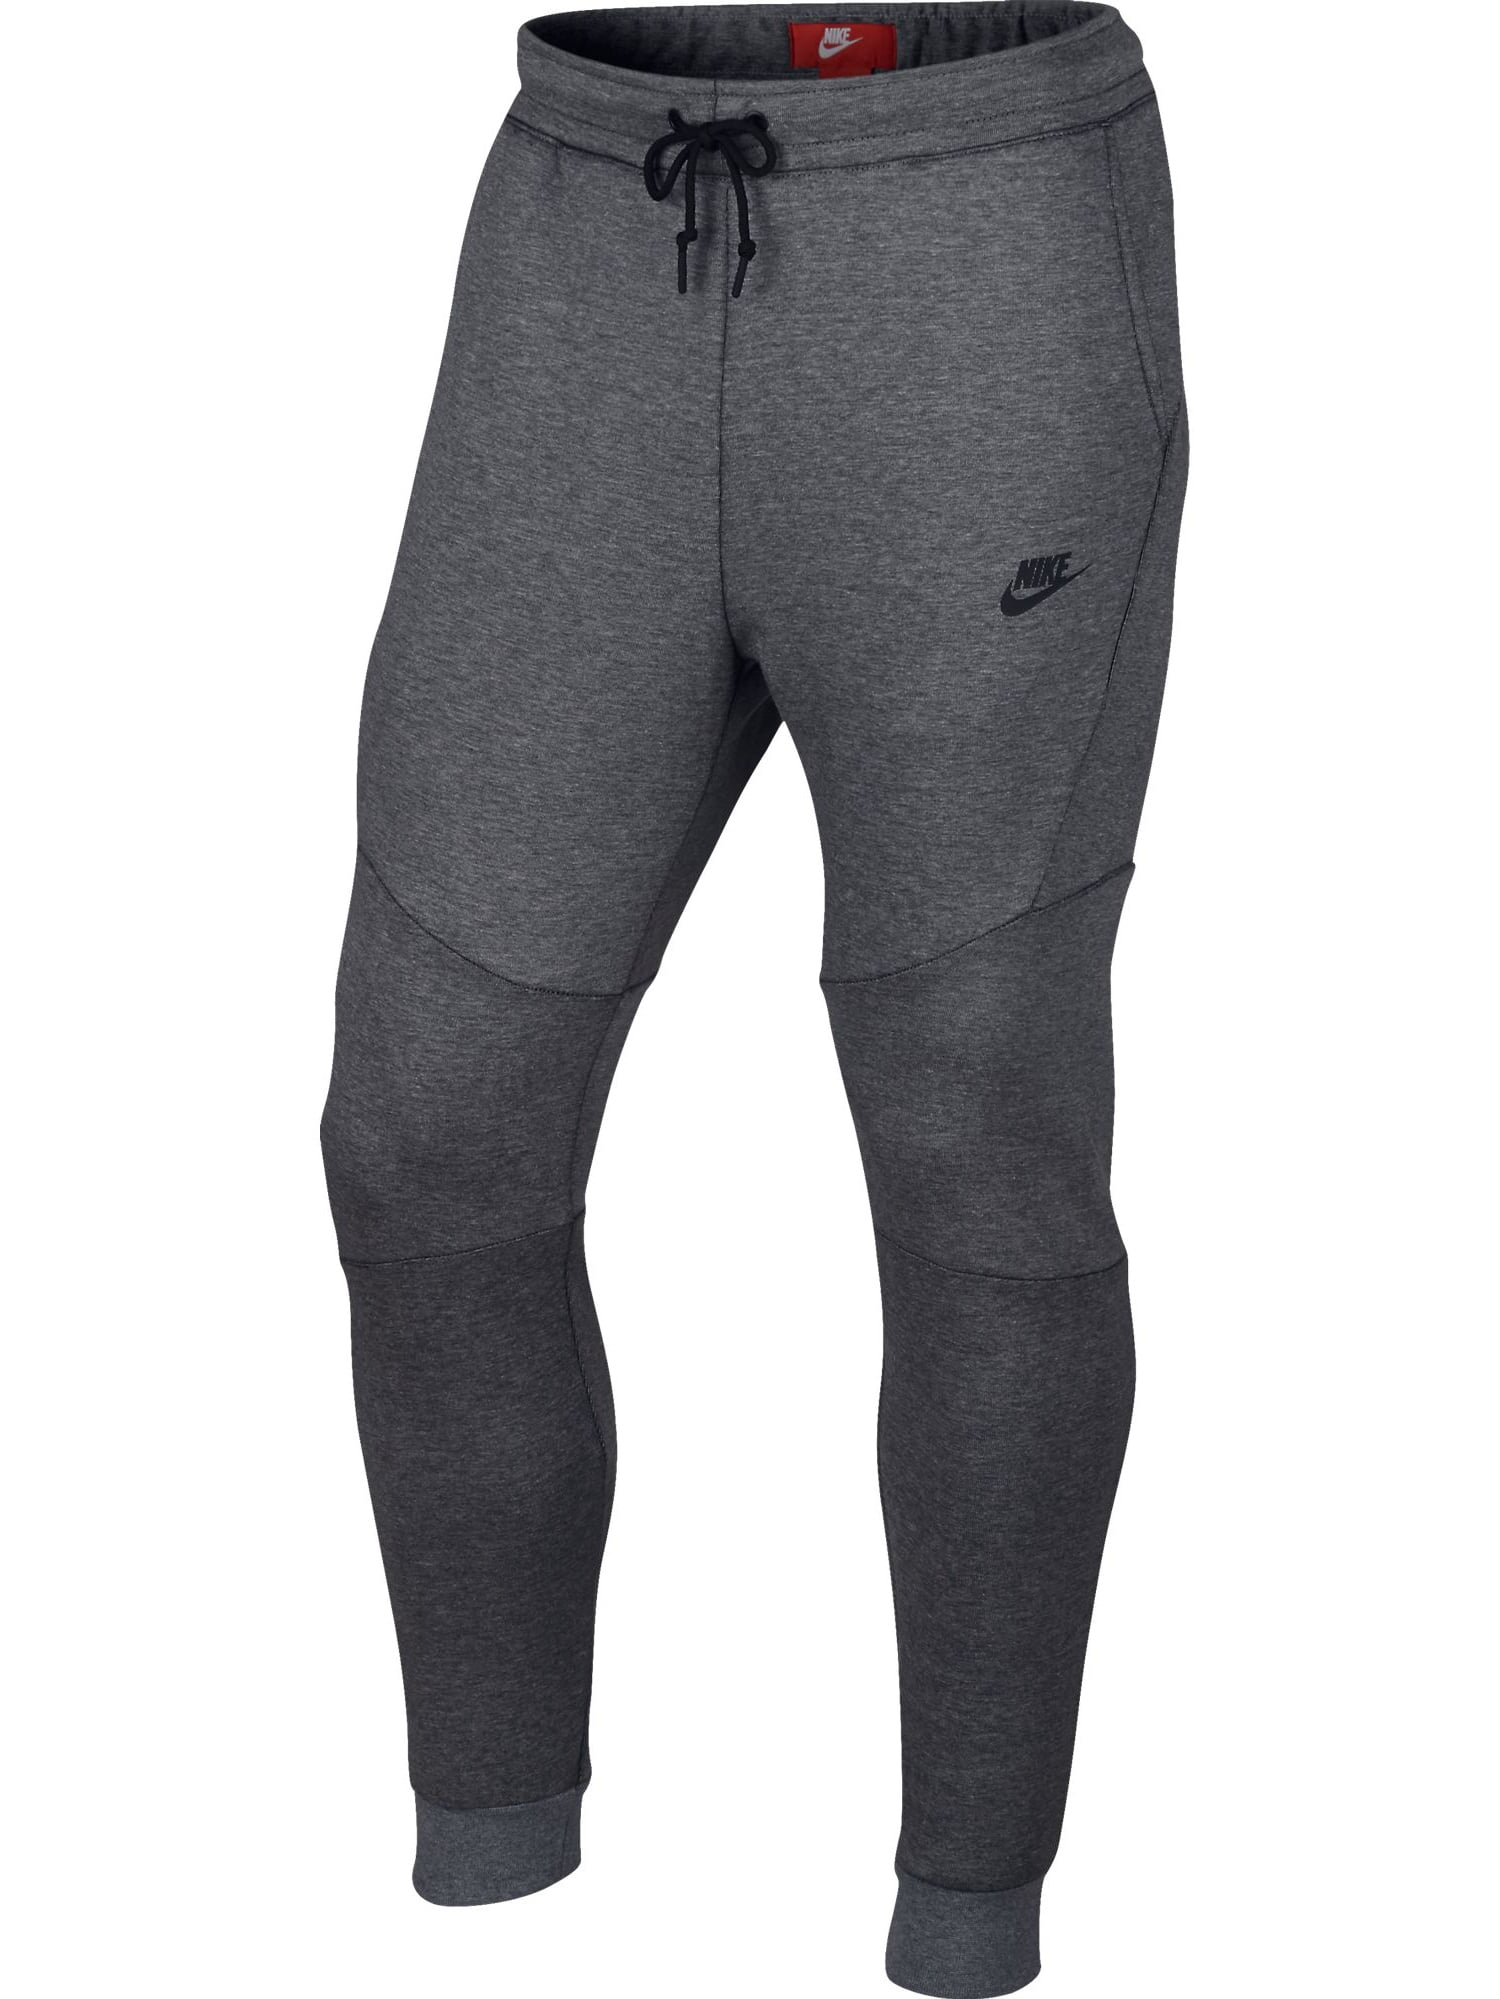 nike sportswear tech fleece men's jogger